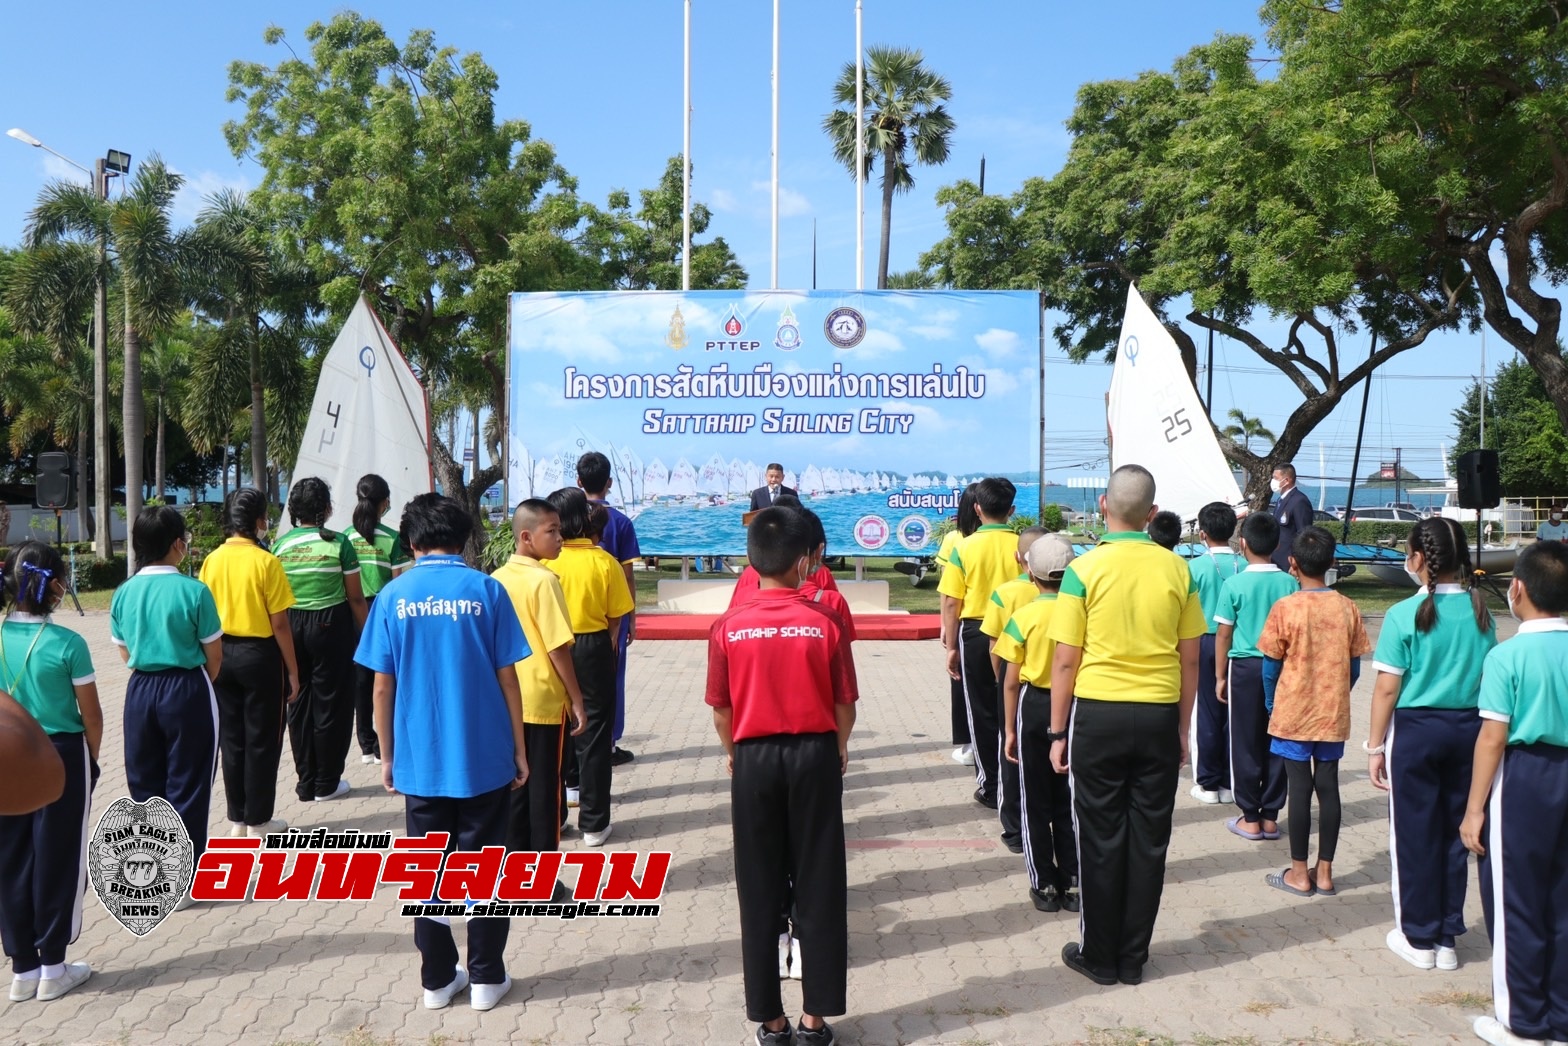 ชลบุรี-ค้นหานักกีฬาเรือใบรุ่นใหม่ใน สัตหีบ เมืองแห่งการแล่นใบ